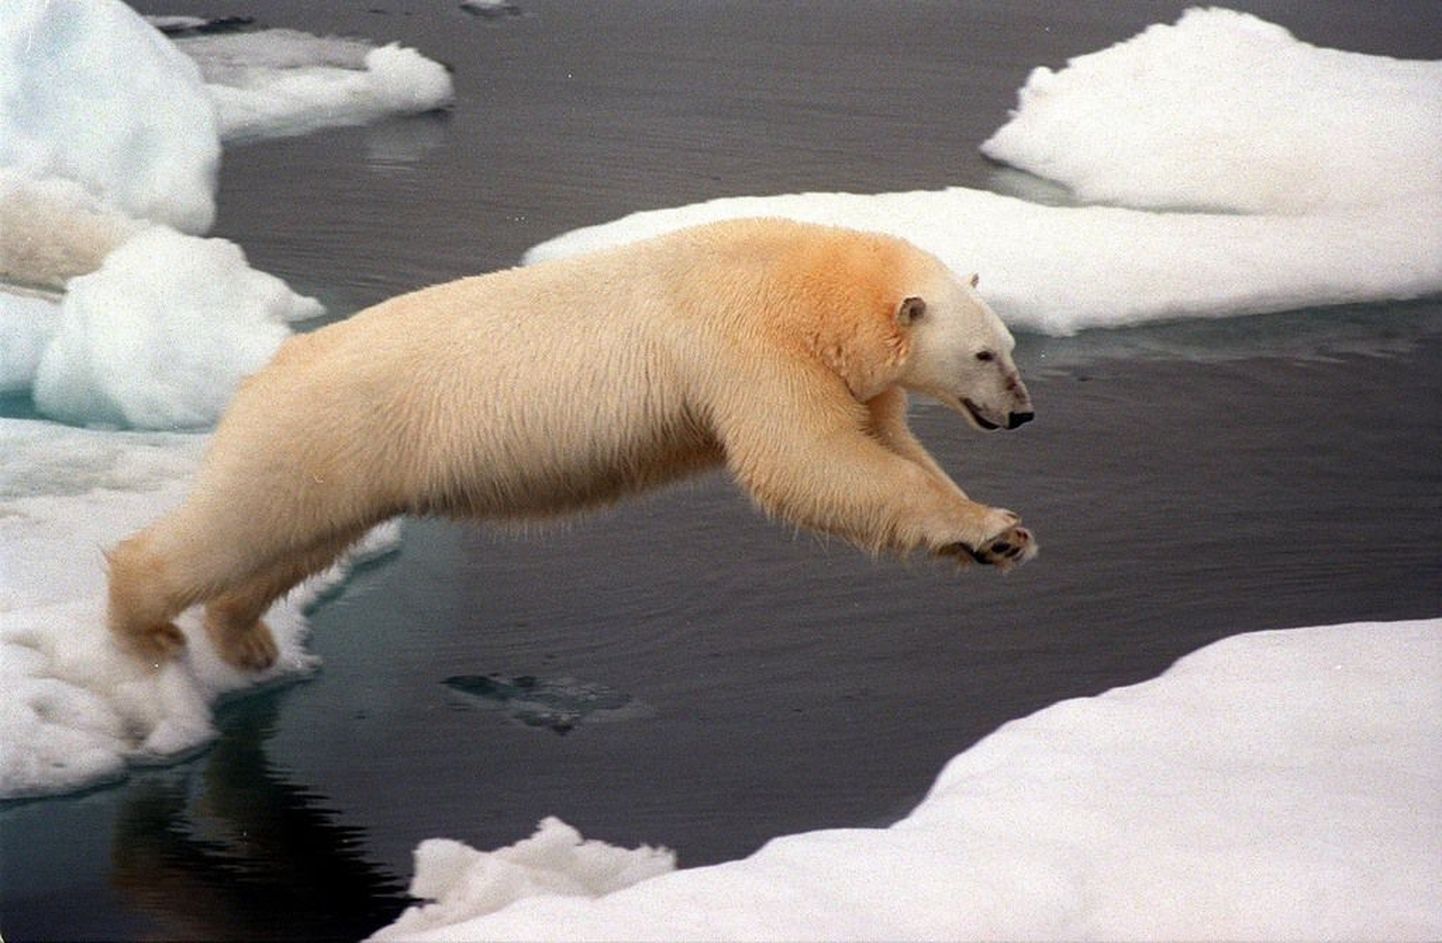 Сегодняшнее изменение климата угрожает хрупкой экосистеме арктического региона, и перспективы белых медведей, как и других видов, безрадостны. Профессор Волли Калм сегодня рассказывает об изменениях климата в прошлом в Музее истории UT.